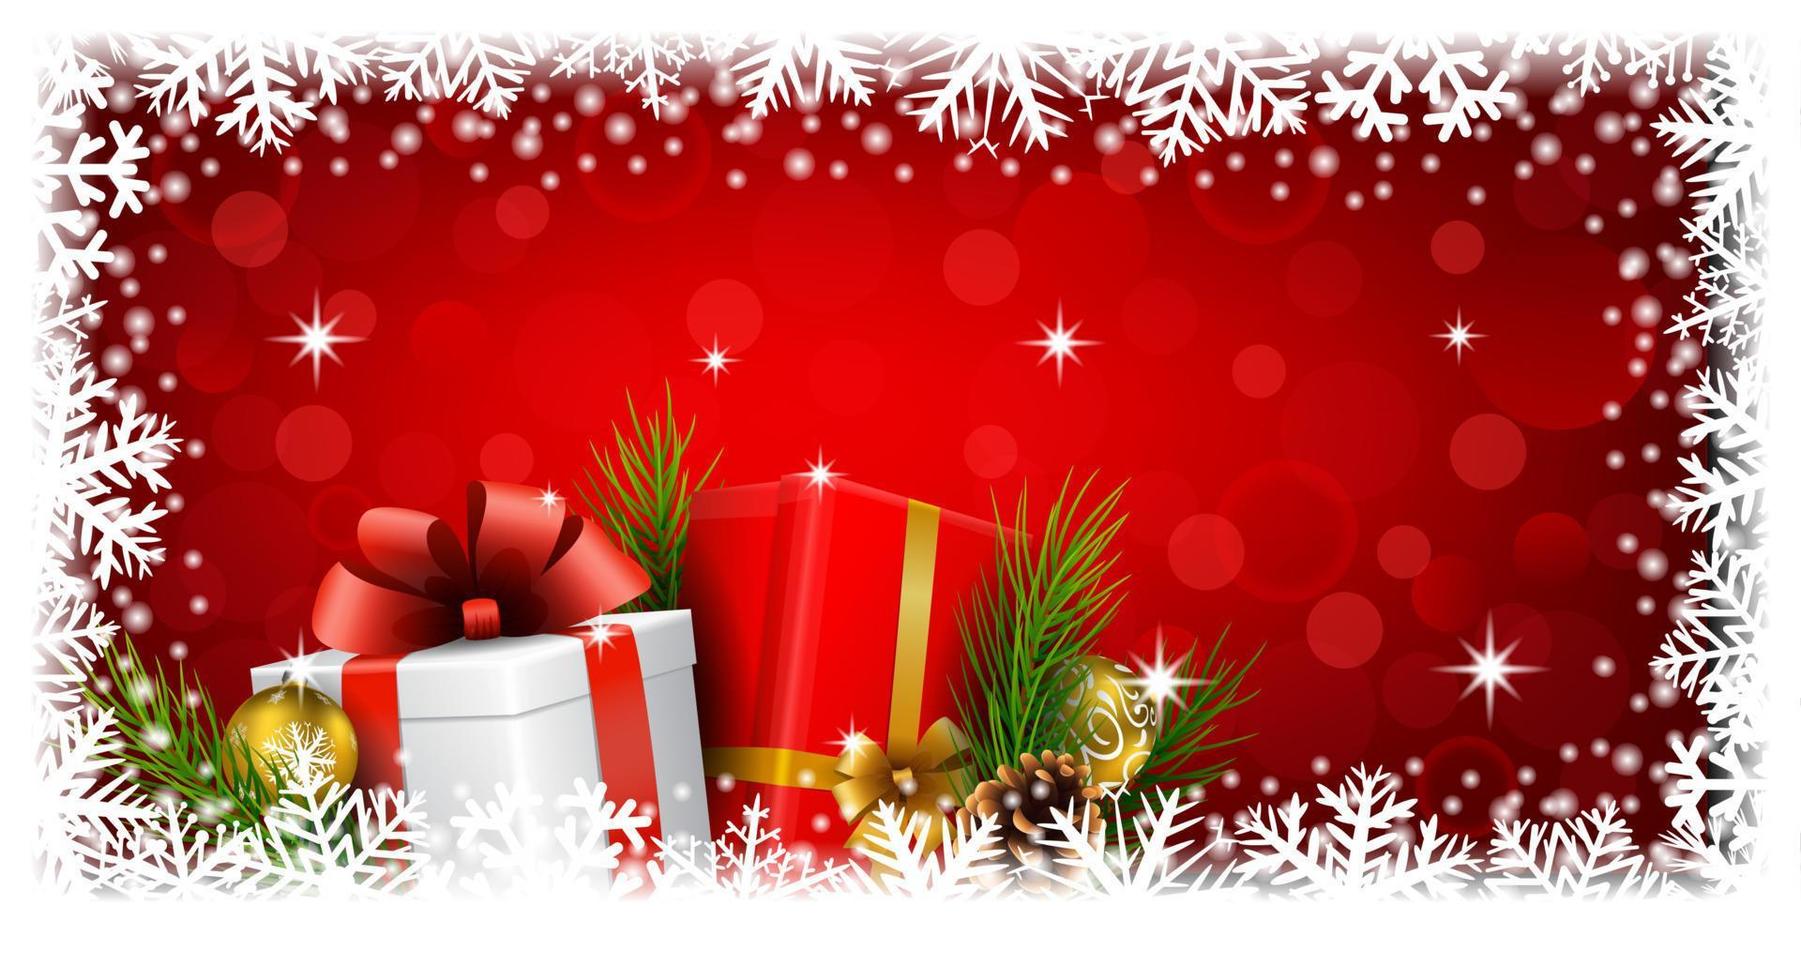 weihnachtsgeschenkboxen und kugeldekoration auf rotlichthintergrund vektor